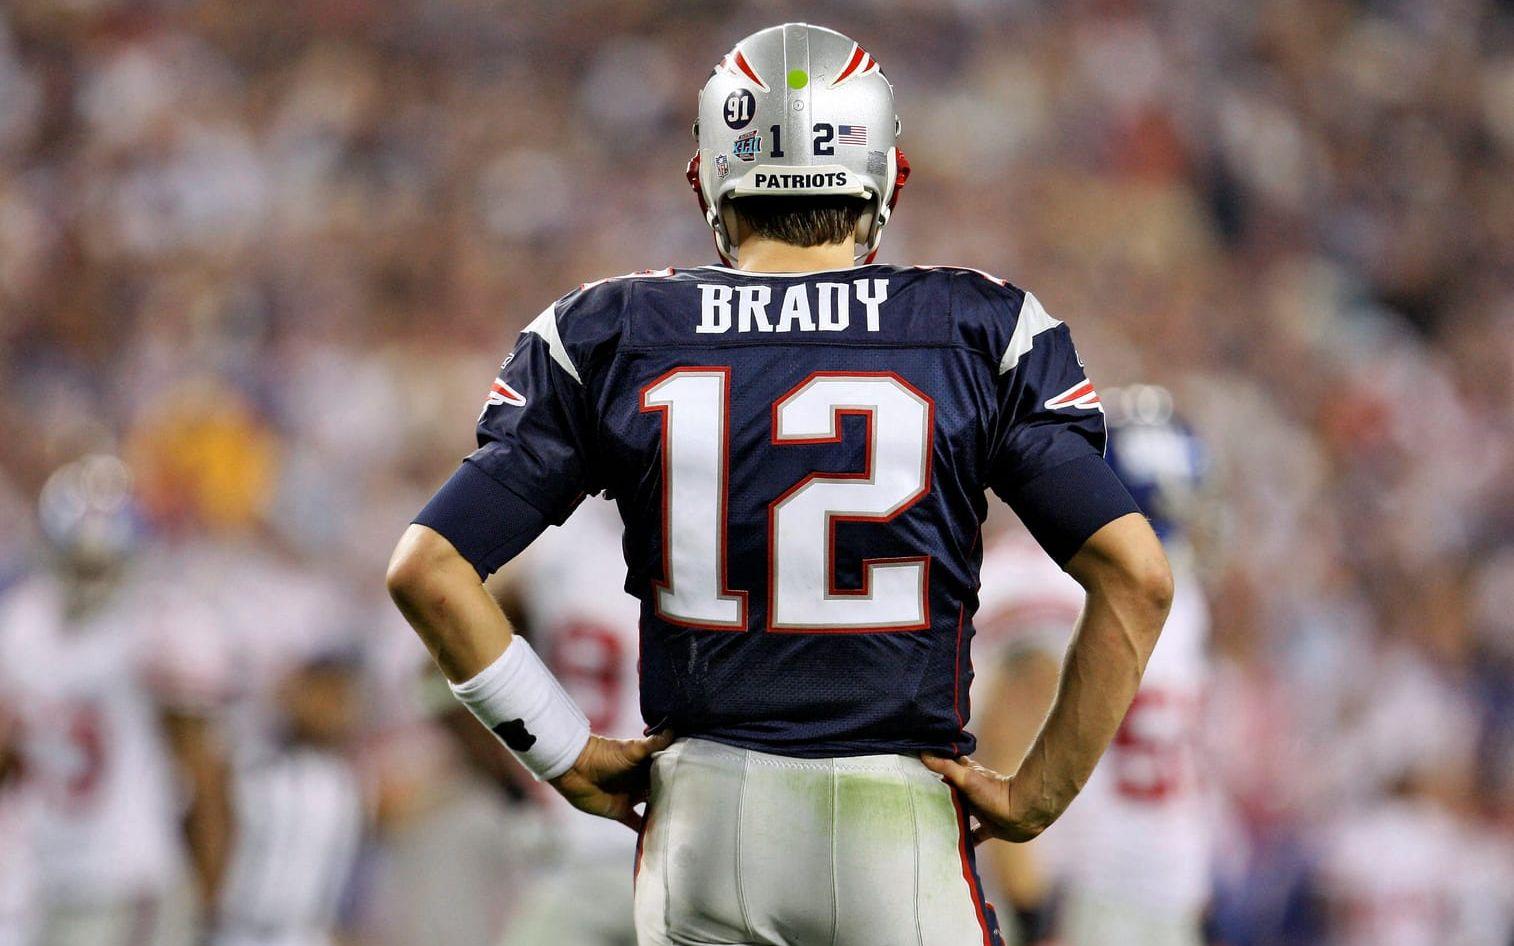 Brady är en av de bästa amerikanska fotbollsspelarna genom tiderna. 